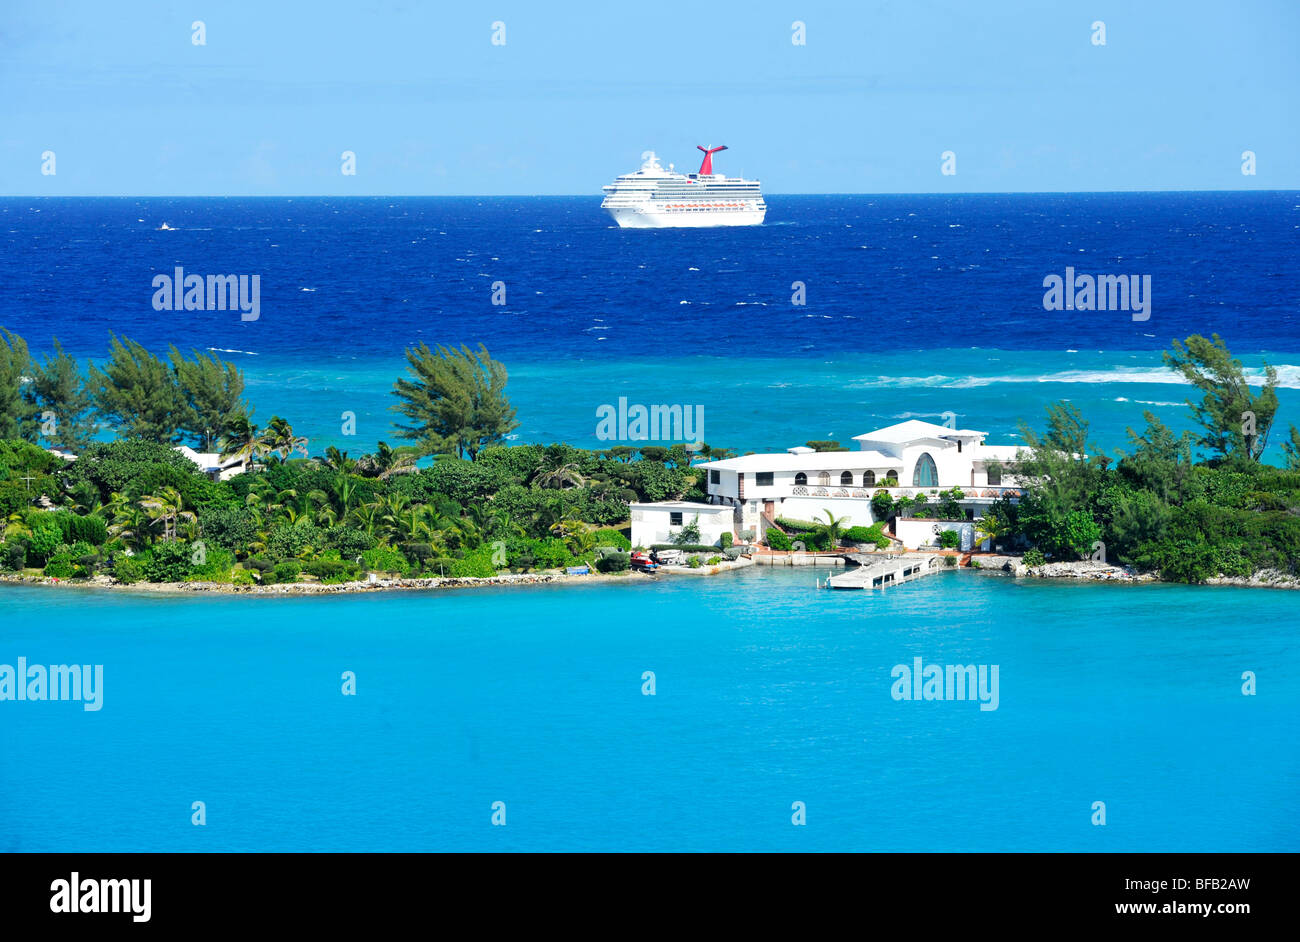 Cruise Ship (celebrity) approaching Nassau Bahamas Stock Photo